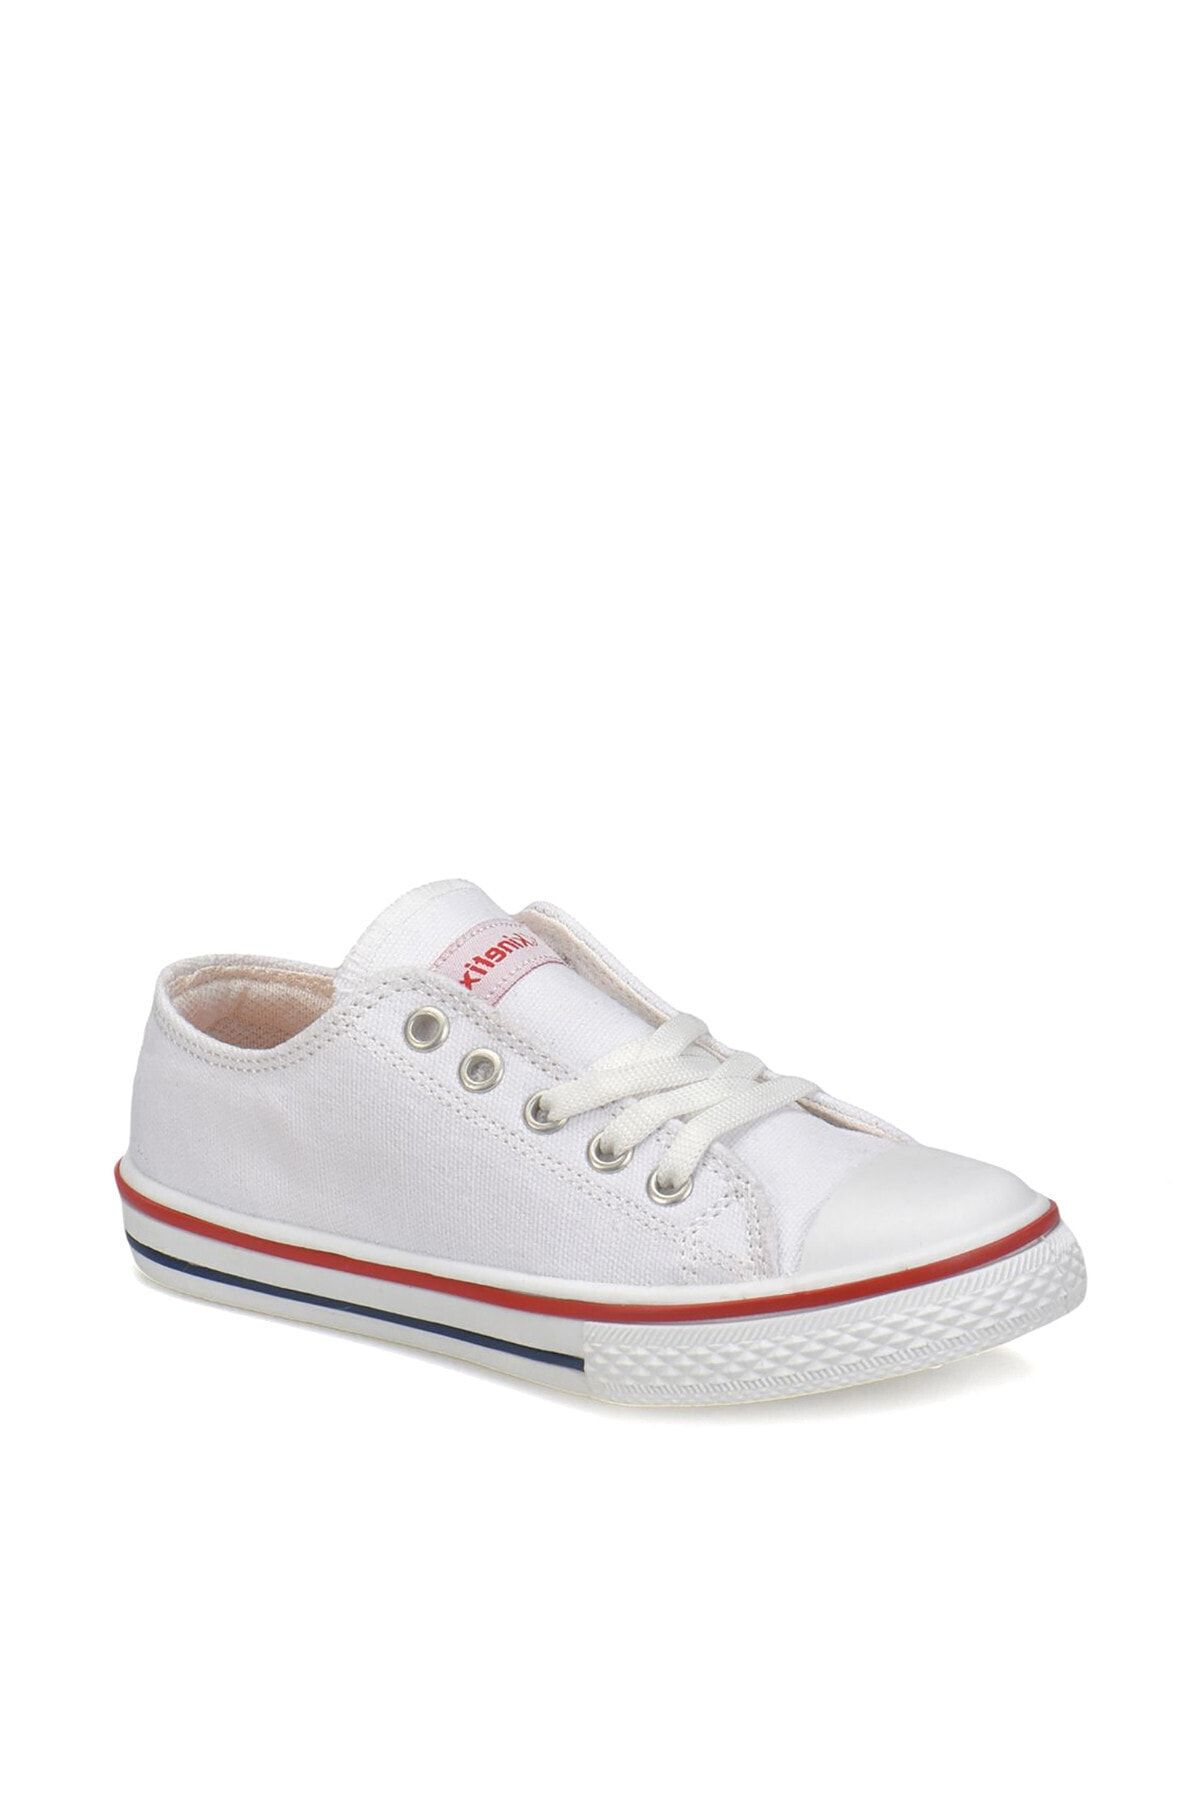 Kinetix DENNI Beyaz Kız Çocuk Sneaker 100232958